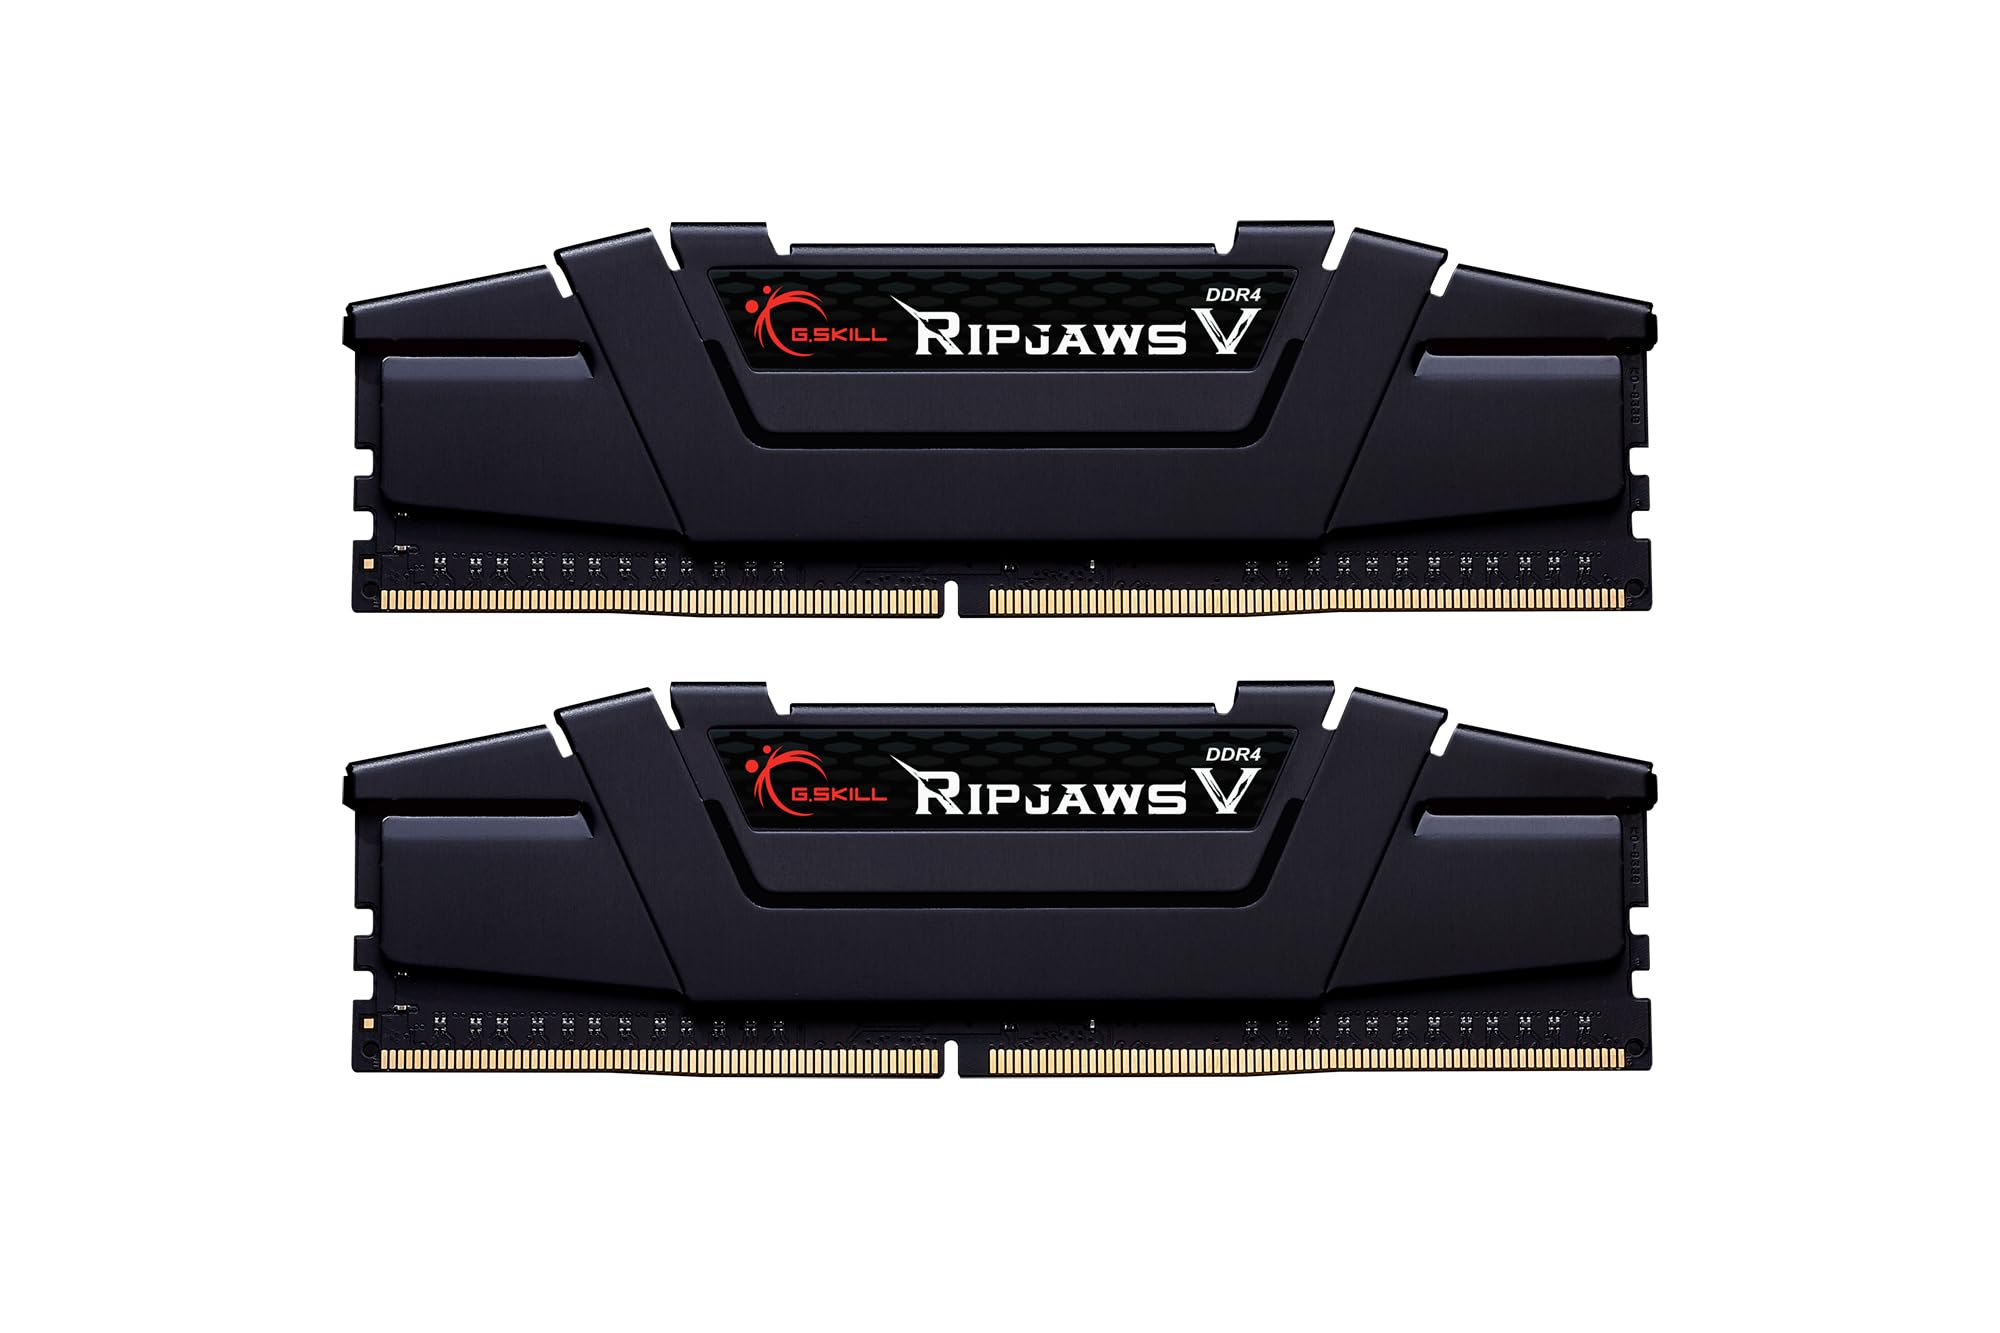 G.SKILL Ripjaws V Series (Intel XMP) DDR4 RAM 32GB (2x16GB) 3600MT/s CL16-19-19-39 1.35V Desktop Computer Memory UDIMM - Black (F4-3600C16D-32GVKC)